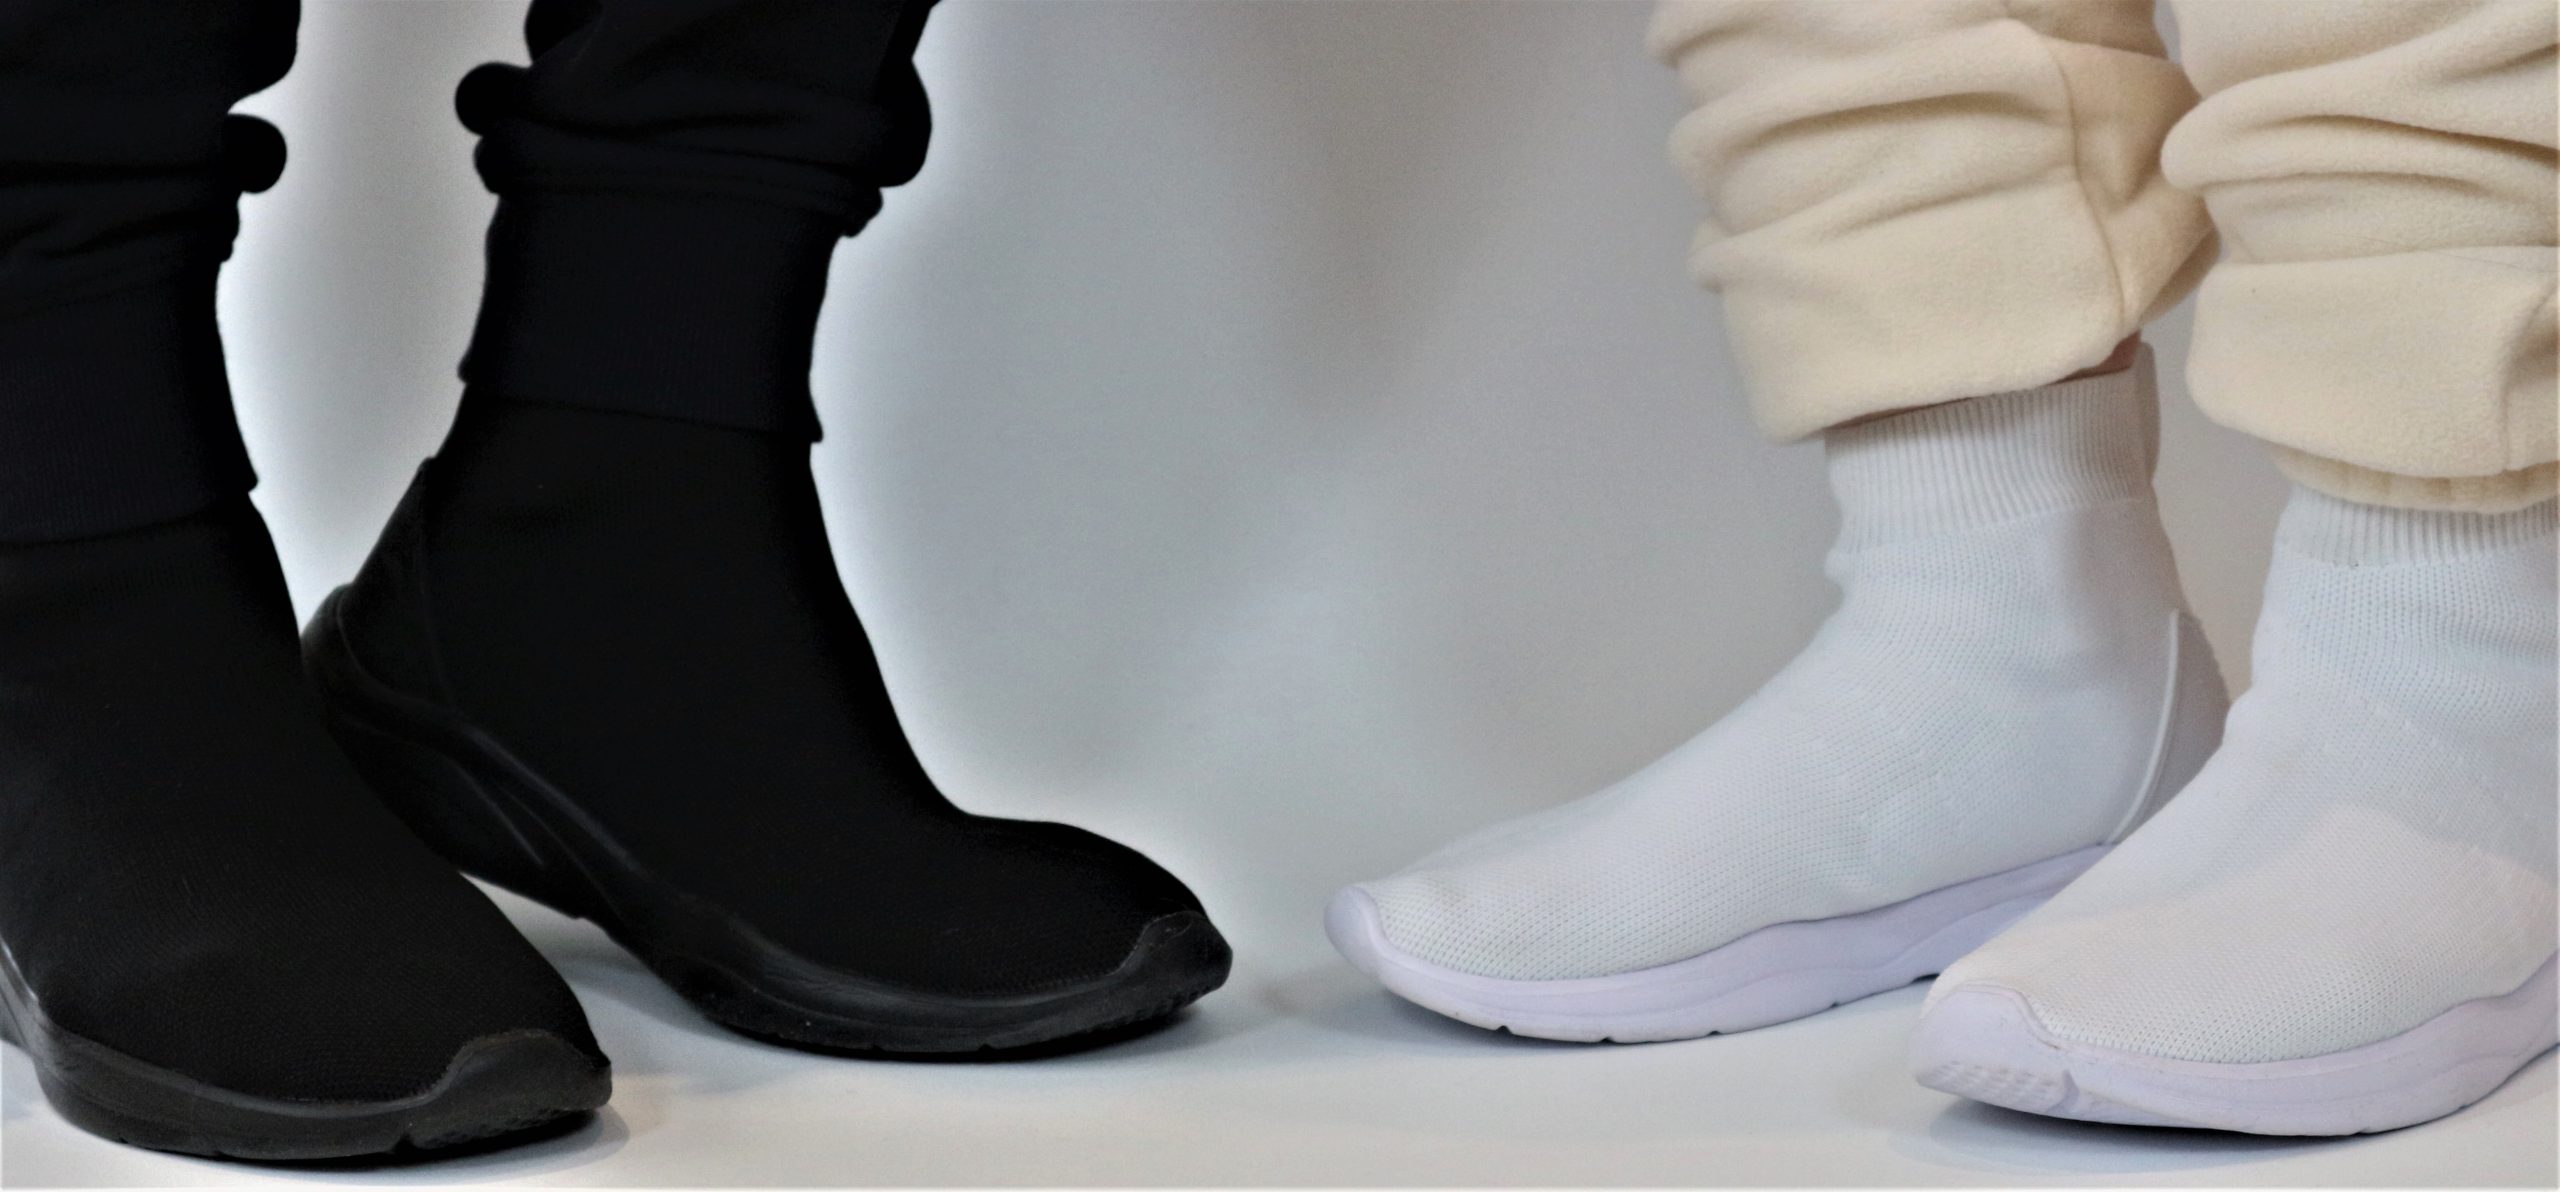 Ein weißes und ein schwarzes Paar Schuhe